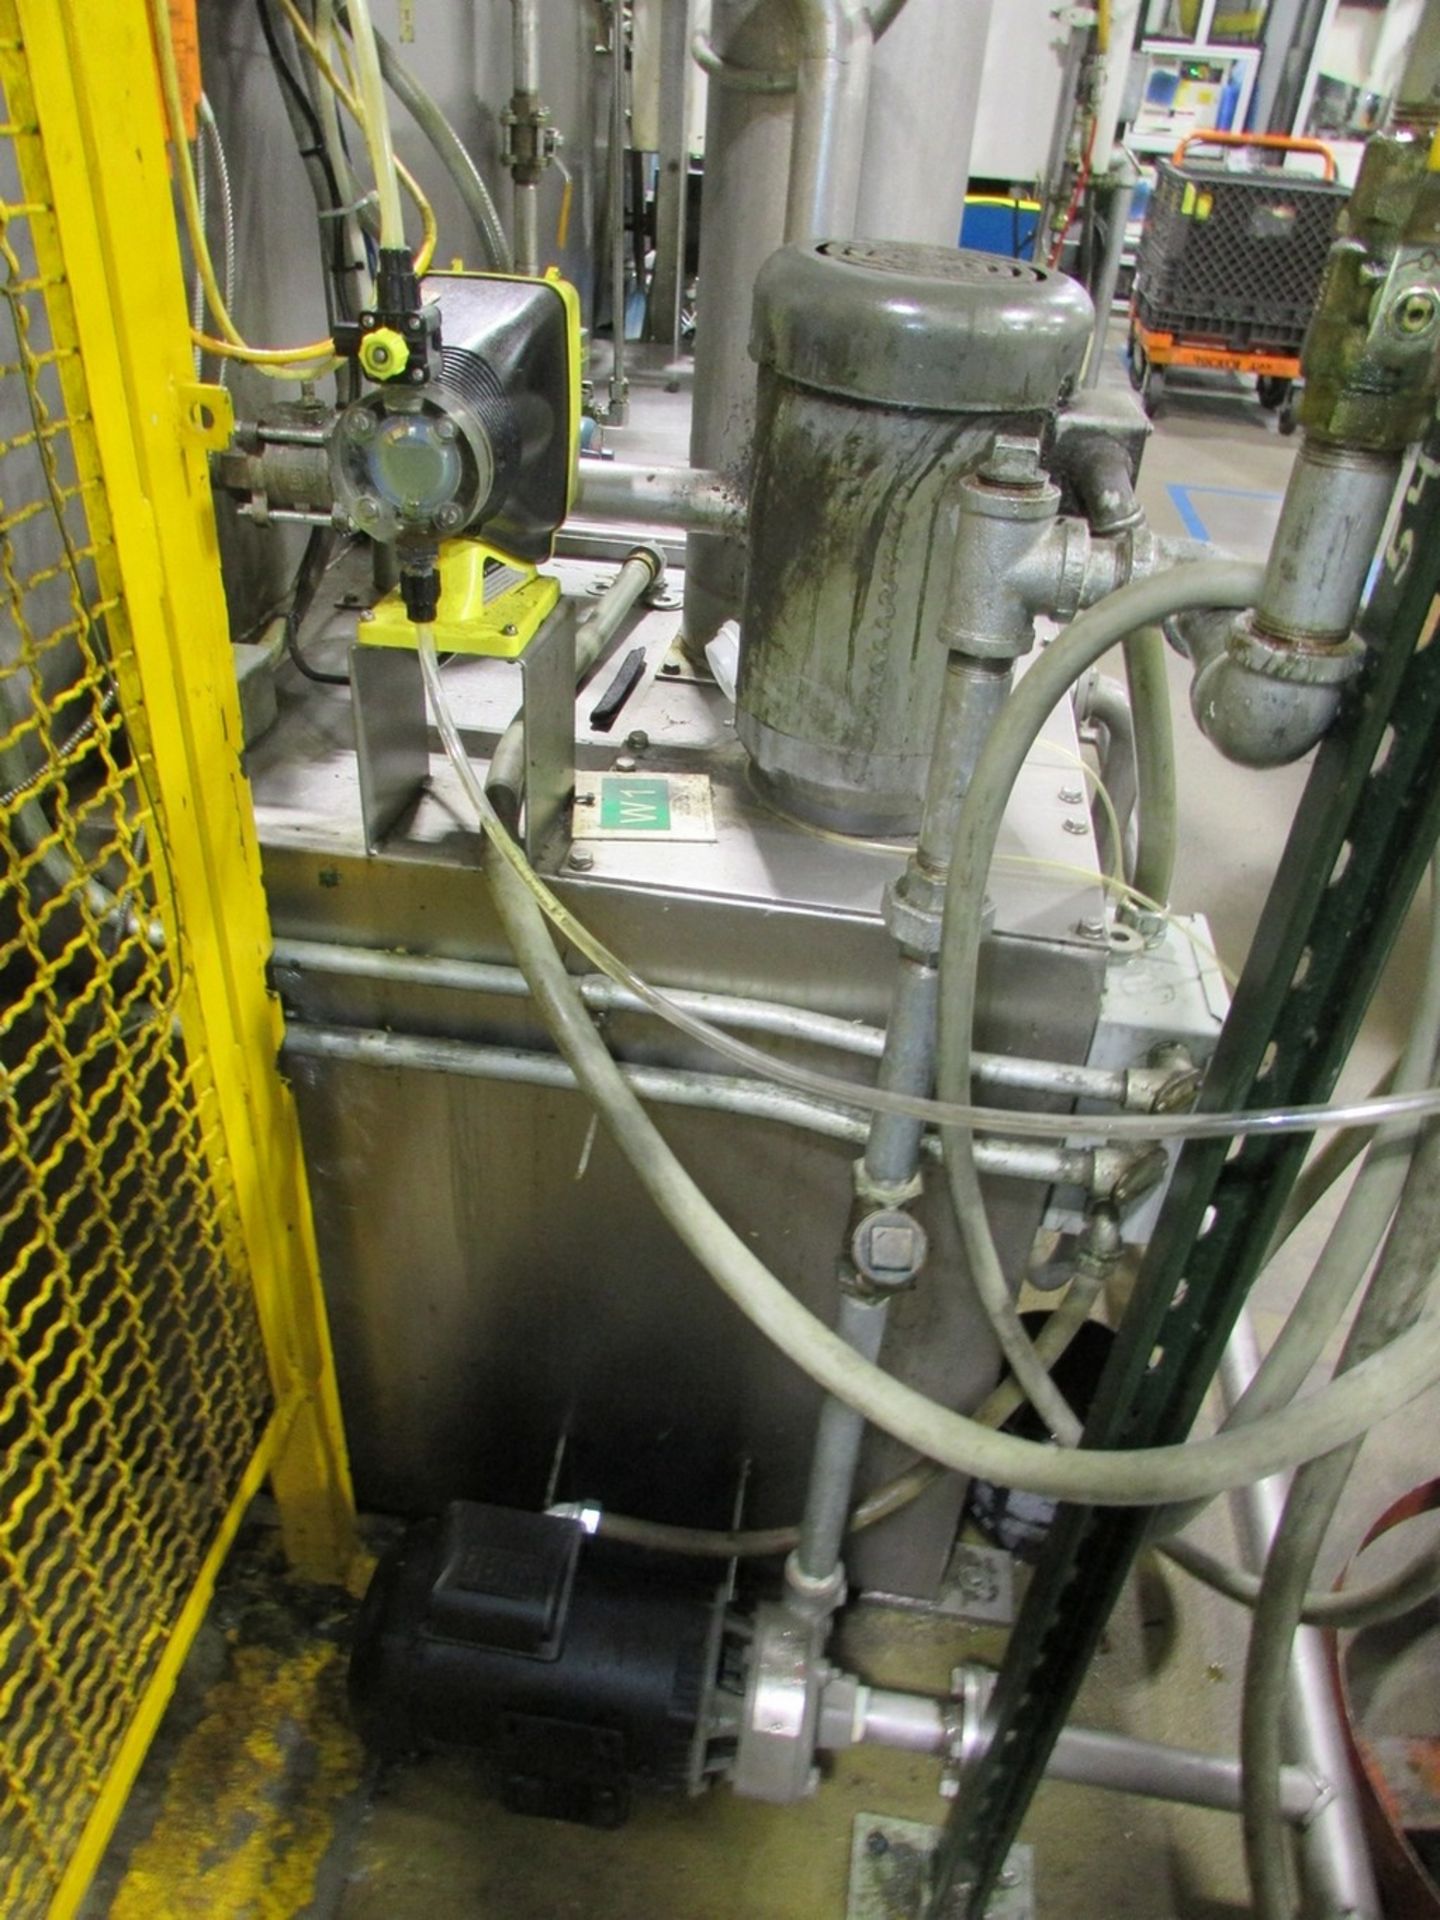 Automated Finishing Model 4078 Automatic Conveyor Parts Washer - Image 7 of 14